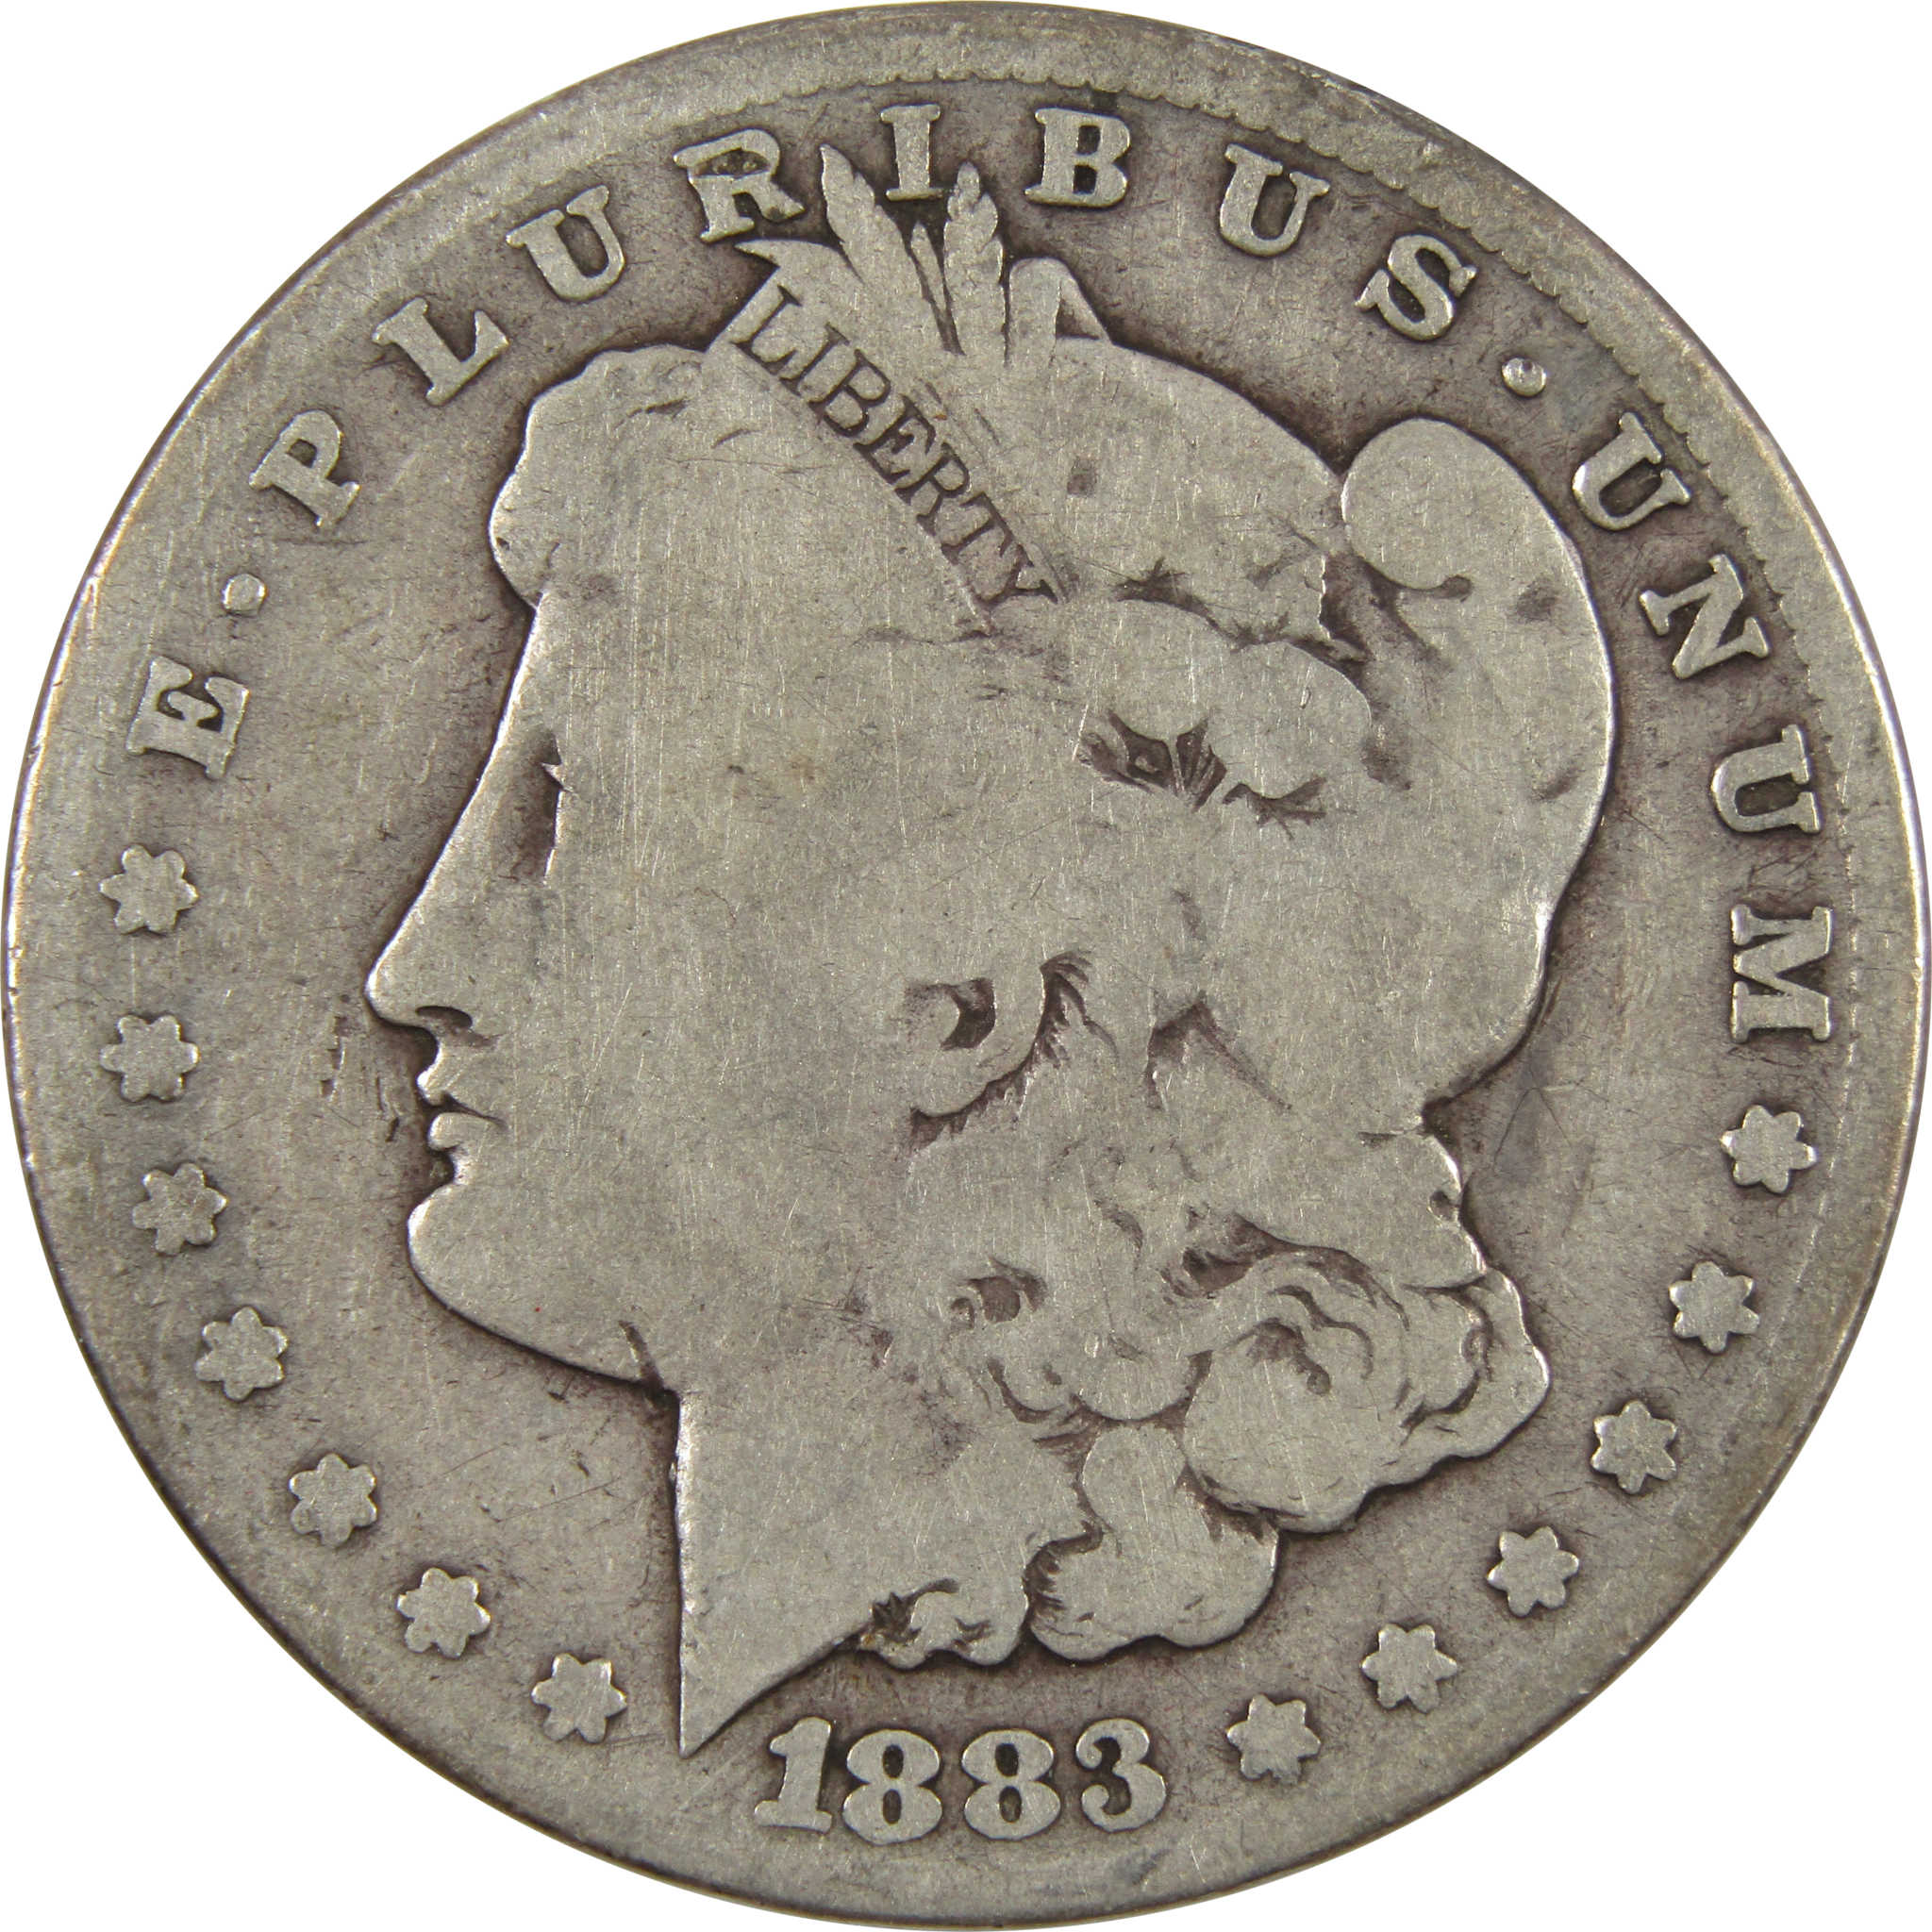 1883 CC Morgan Dollar G Good 90% Silver $1 Coin SKU:I9260 - Morgan coin - Morgan silver dollar - Morgan silver dollar for sale - Profile Coins &amp; Collectibles